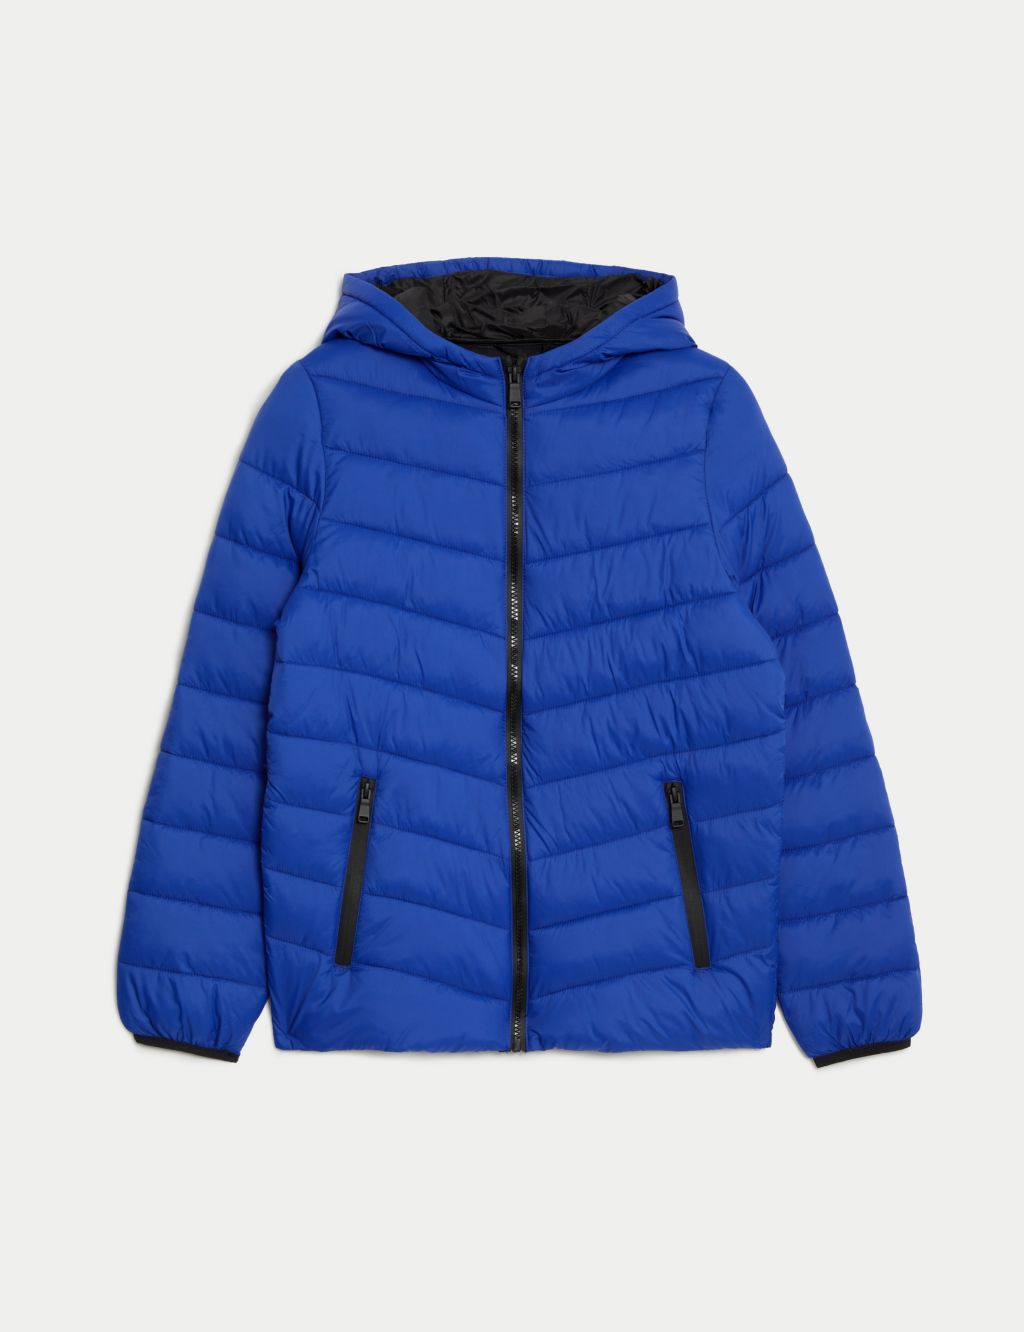 Paddington Bear Blue Coat - William Jacket